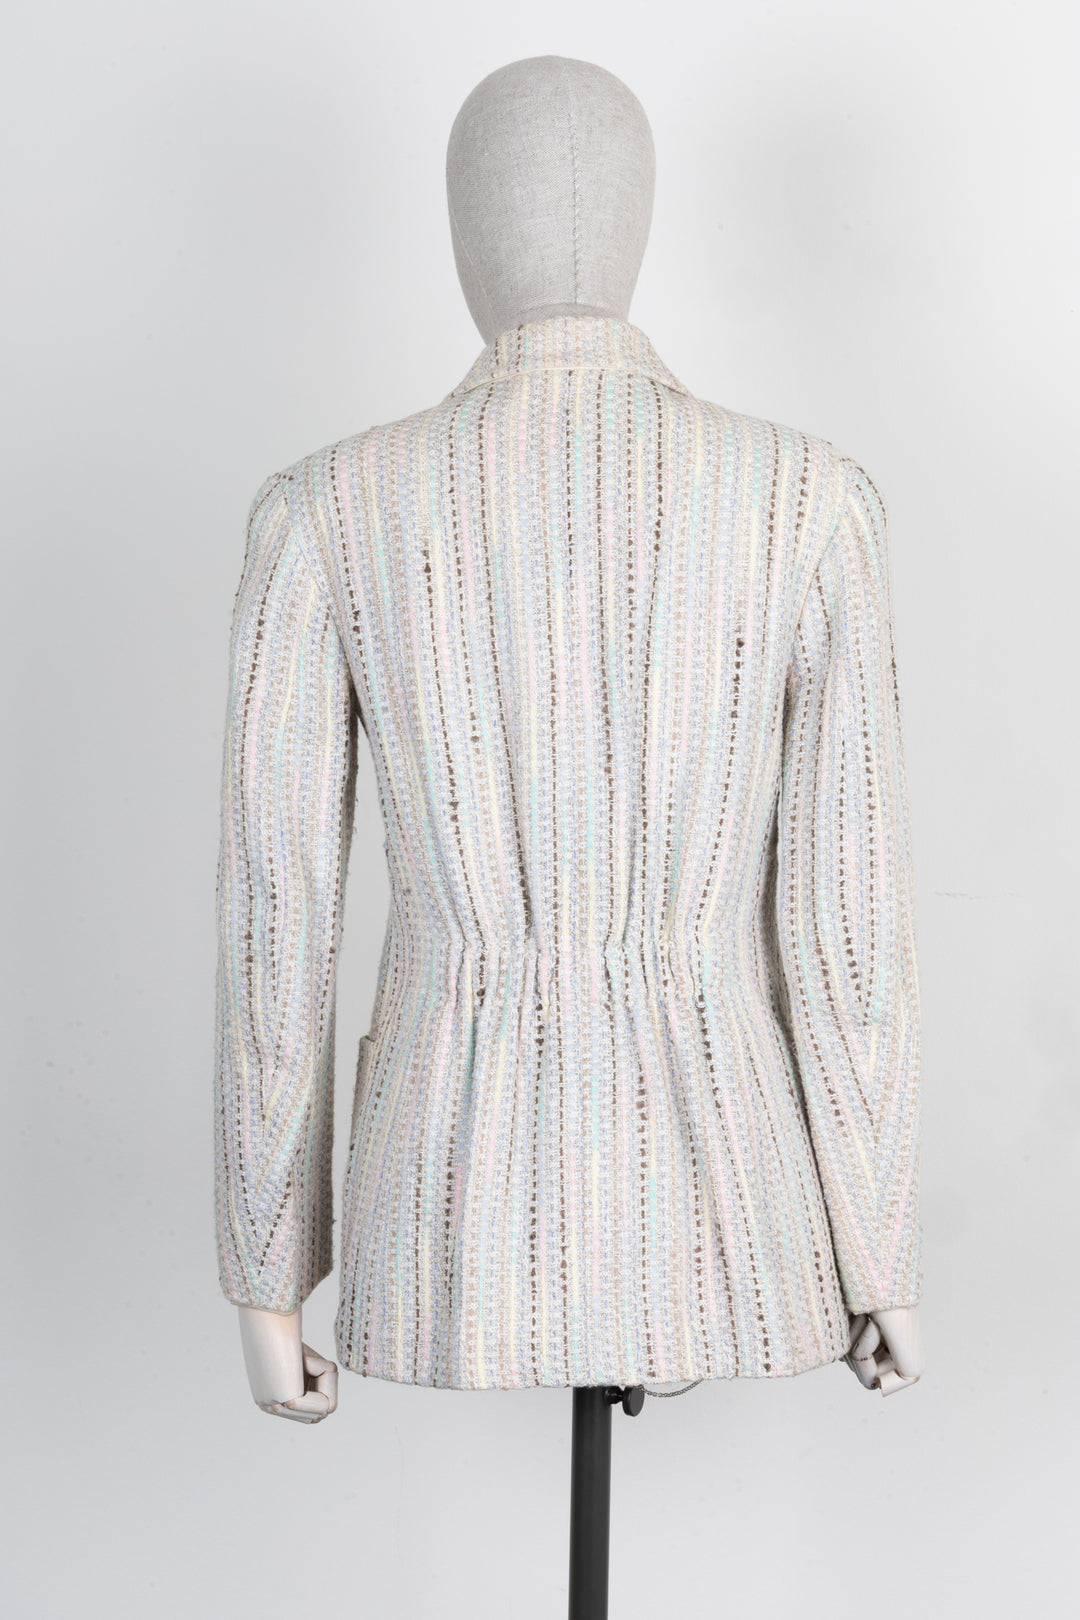 CHANEL Jacket Tweed Striped Multicolor 00C